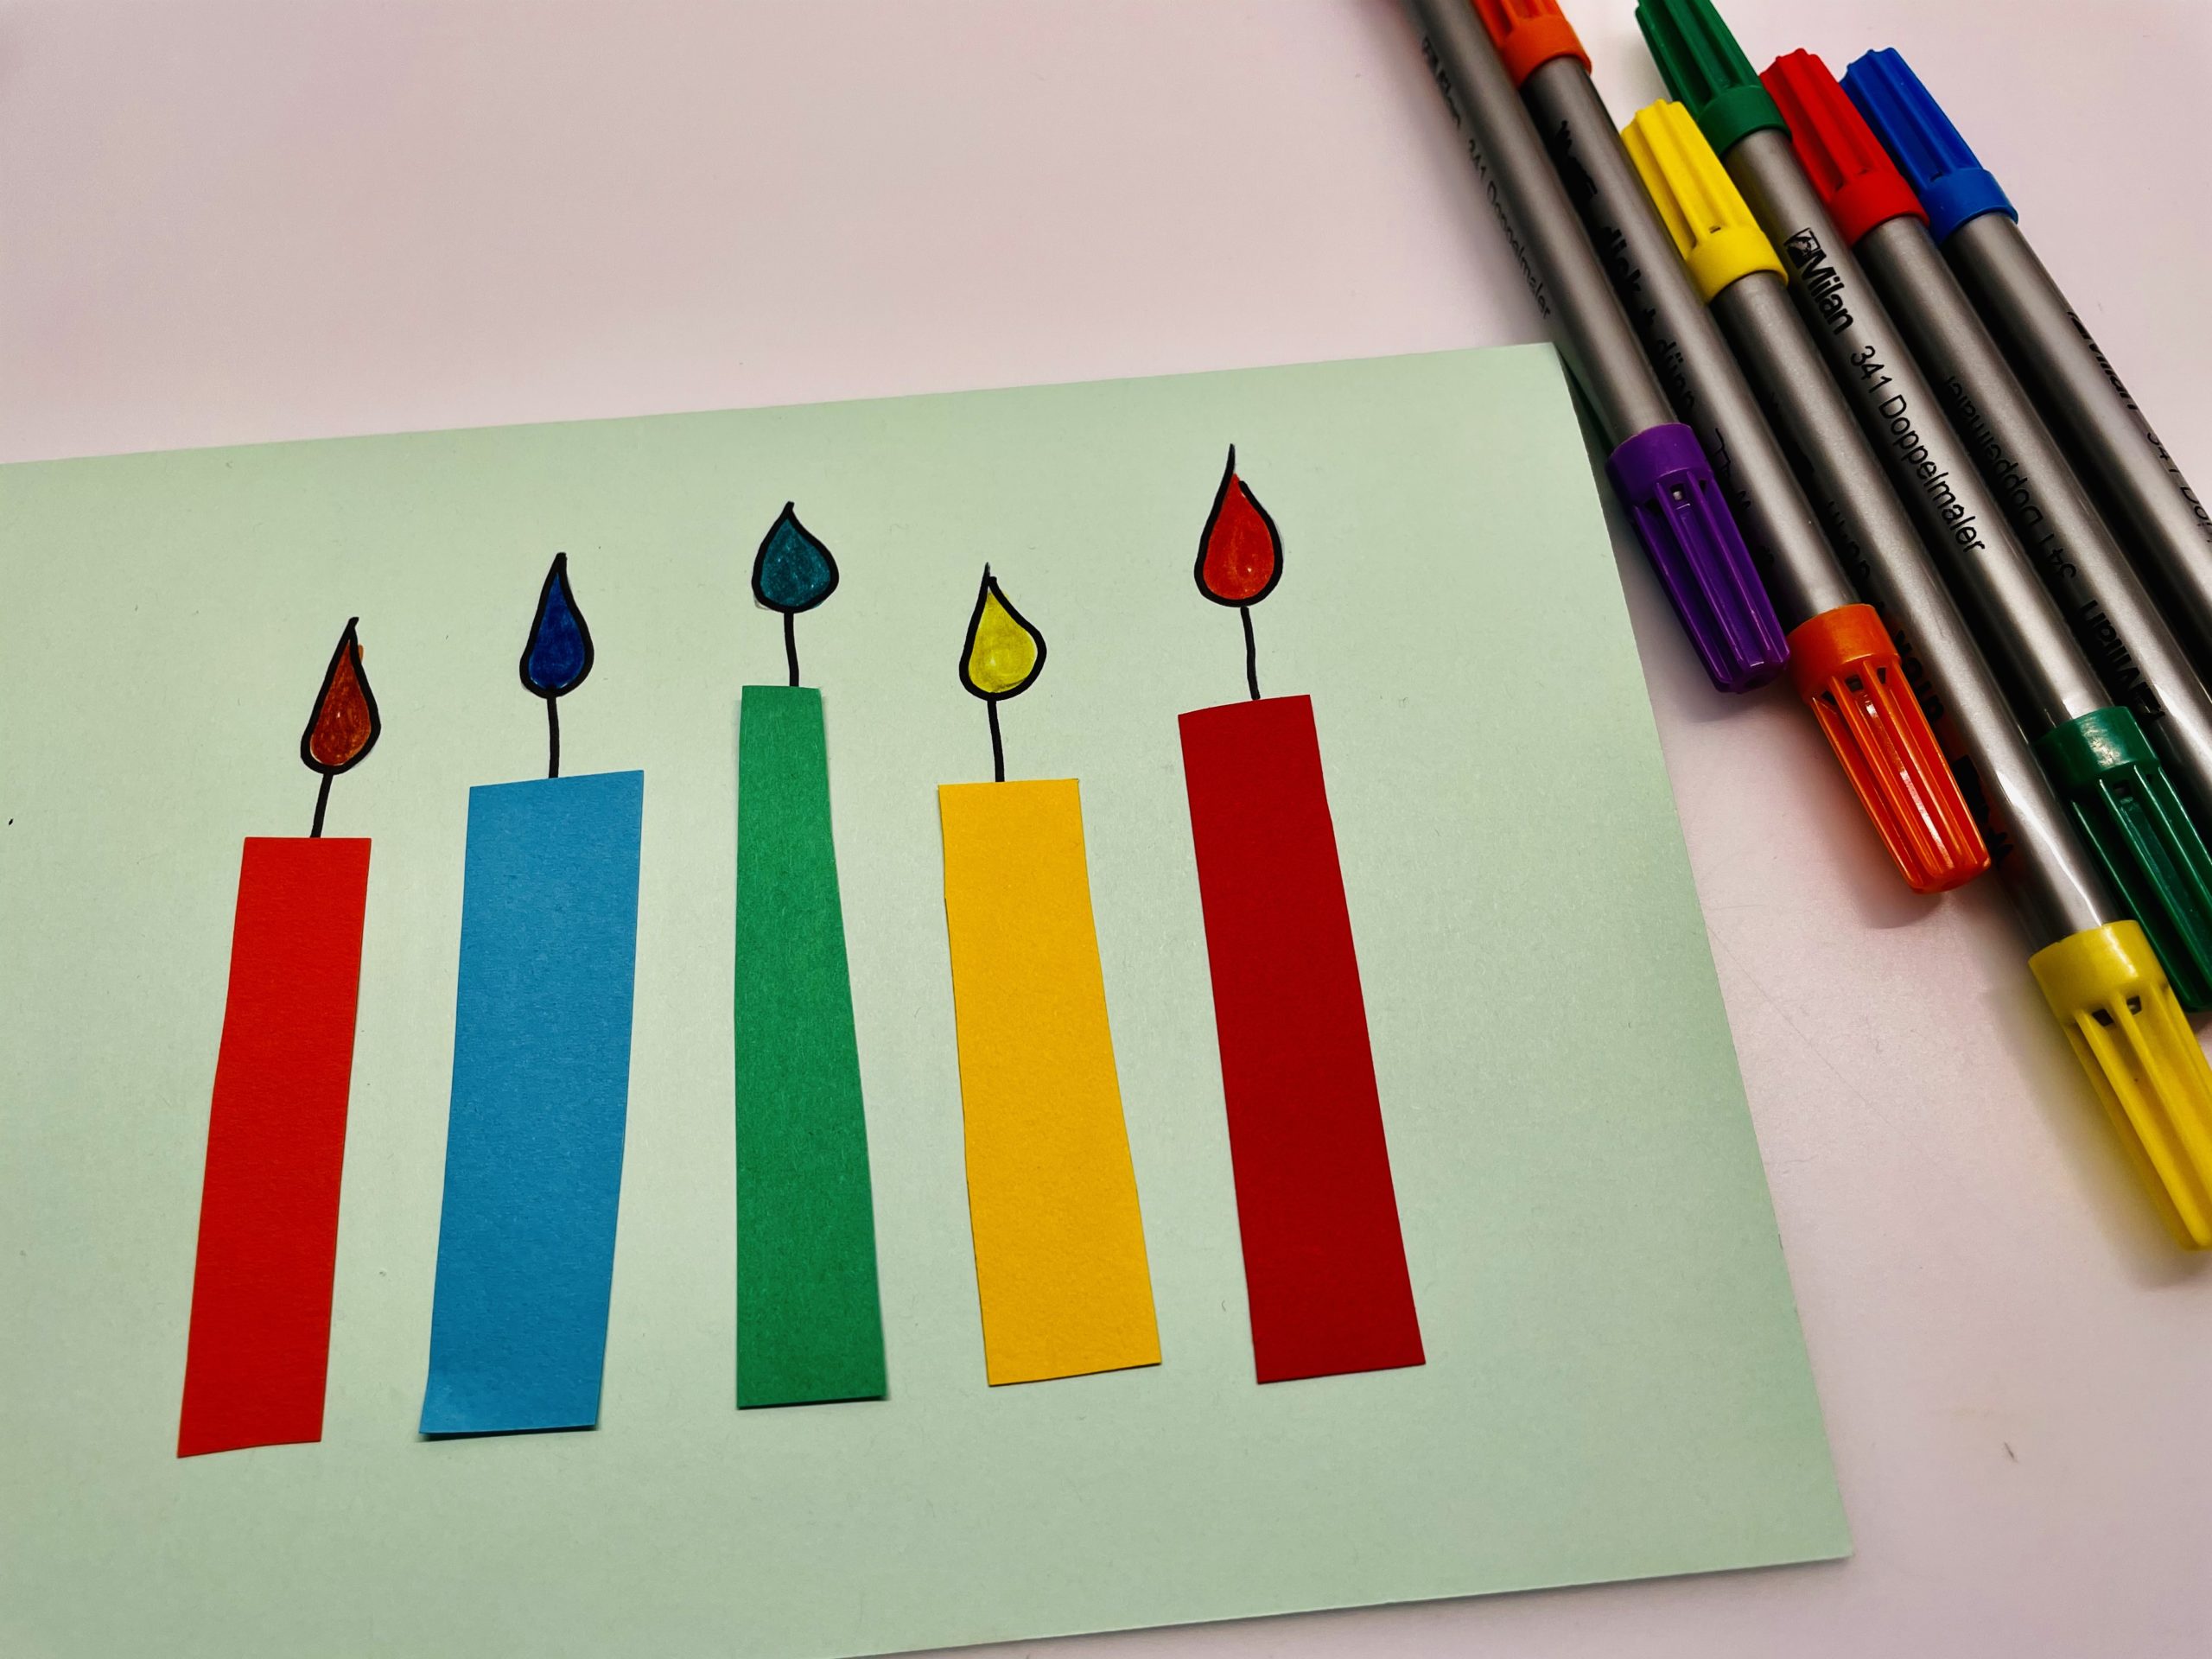 Bild zum Schritt 8 für die Kinder-Beschäftigung: 'Jetzt malt die Flammen aus. Zum Beispiel in den Farben...'